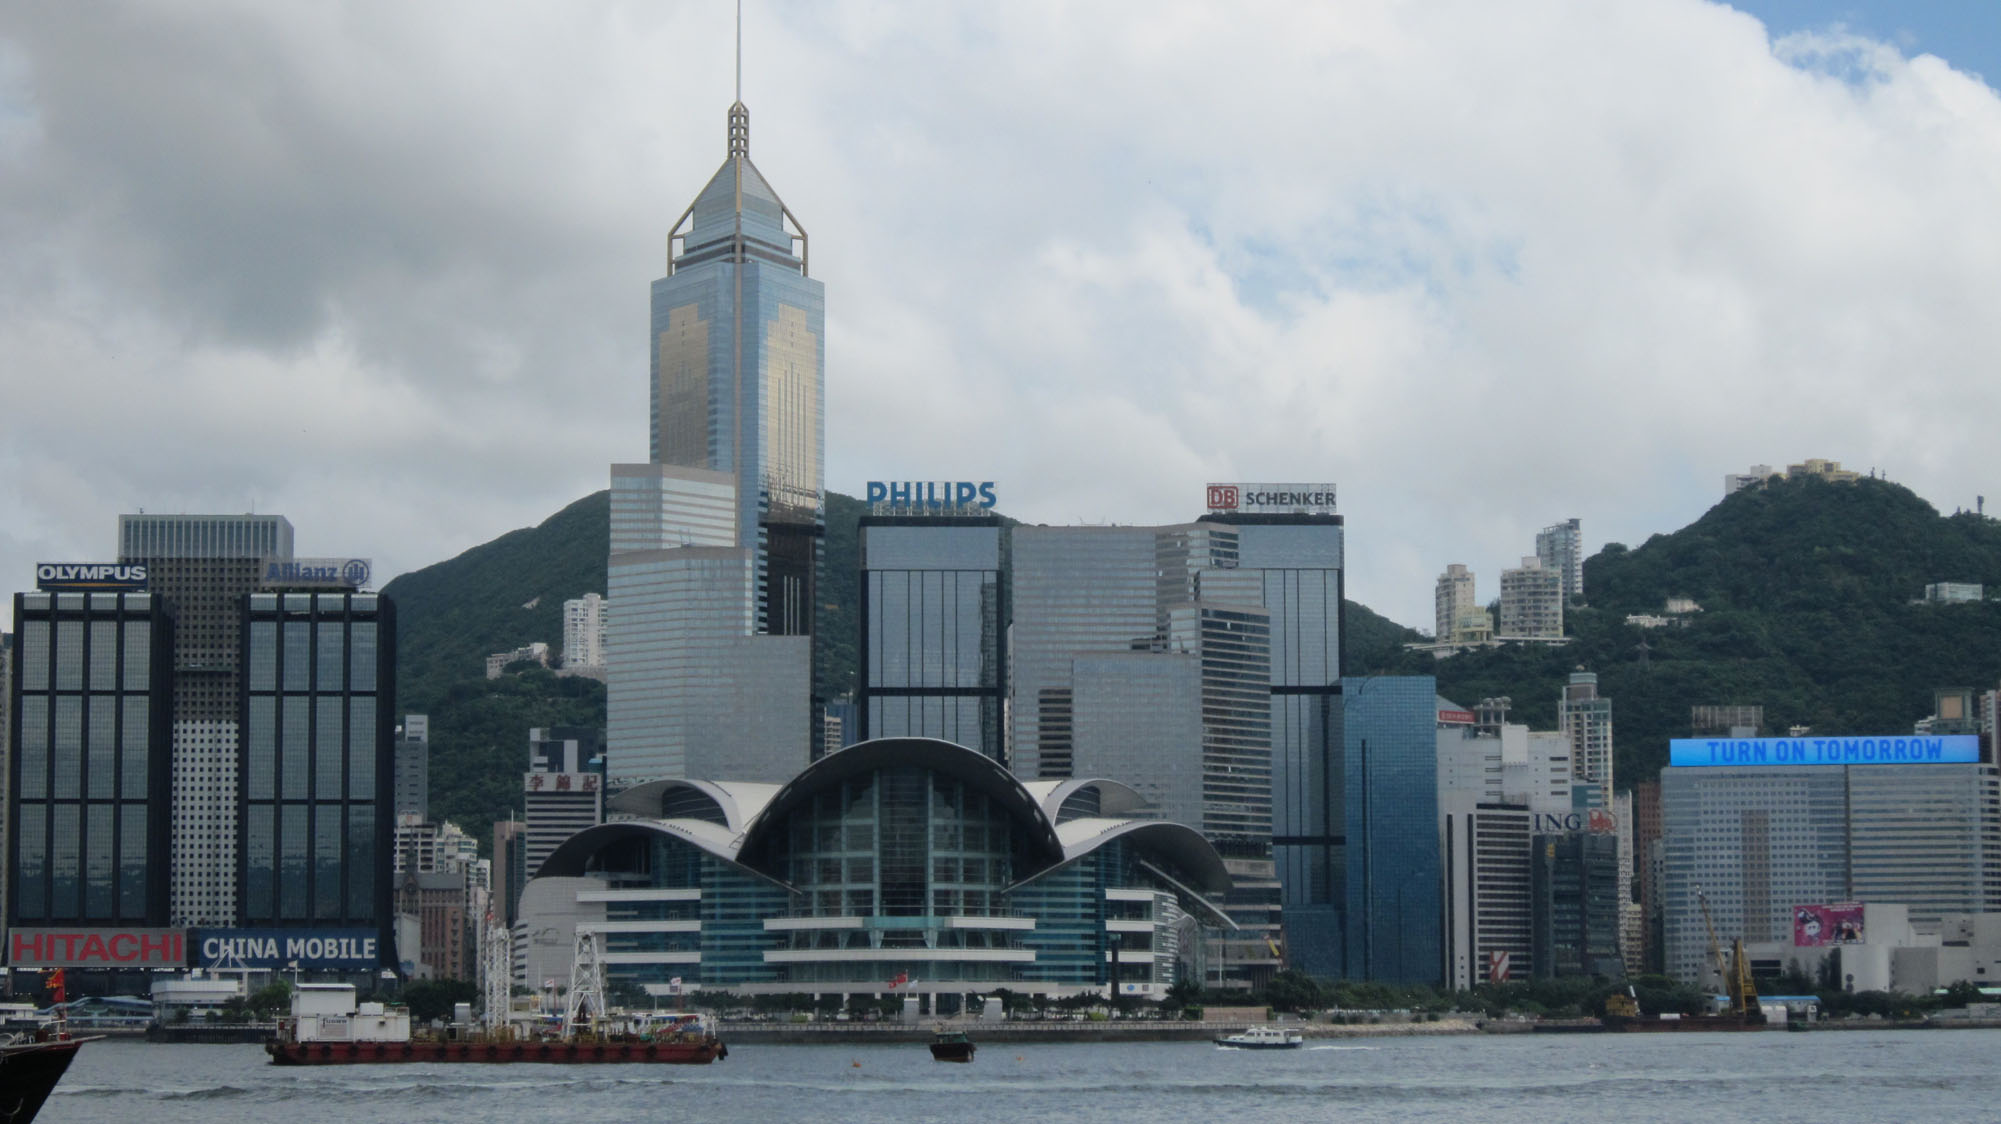 香港入境事務大樓